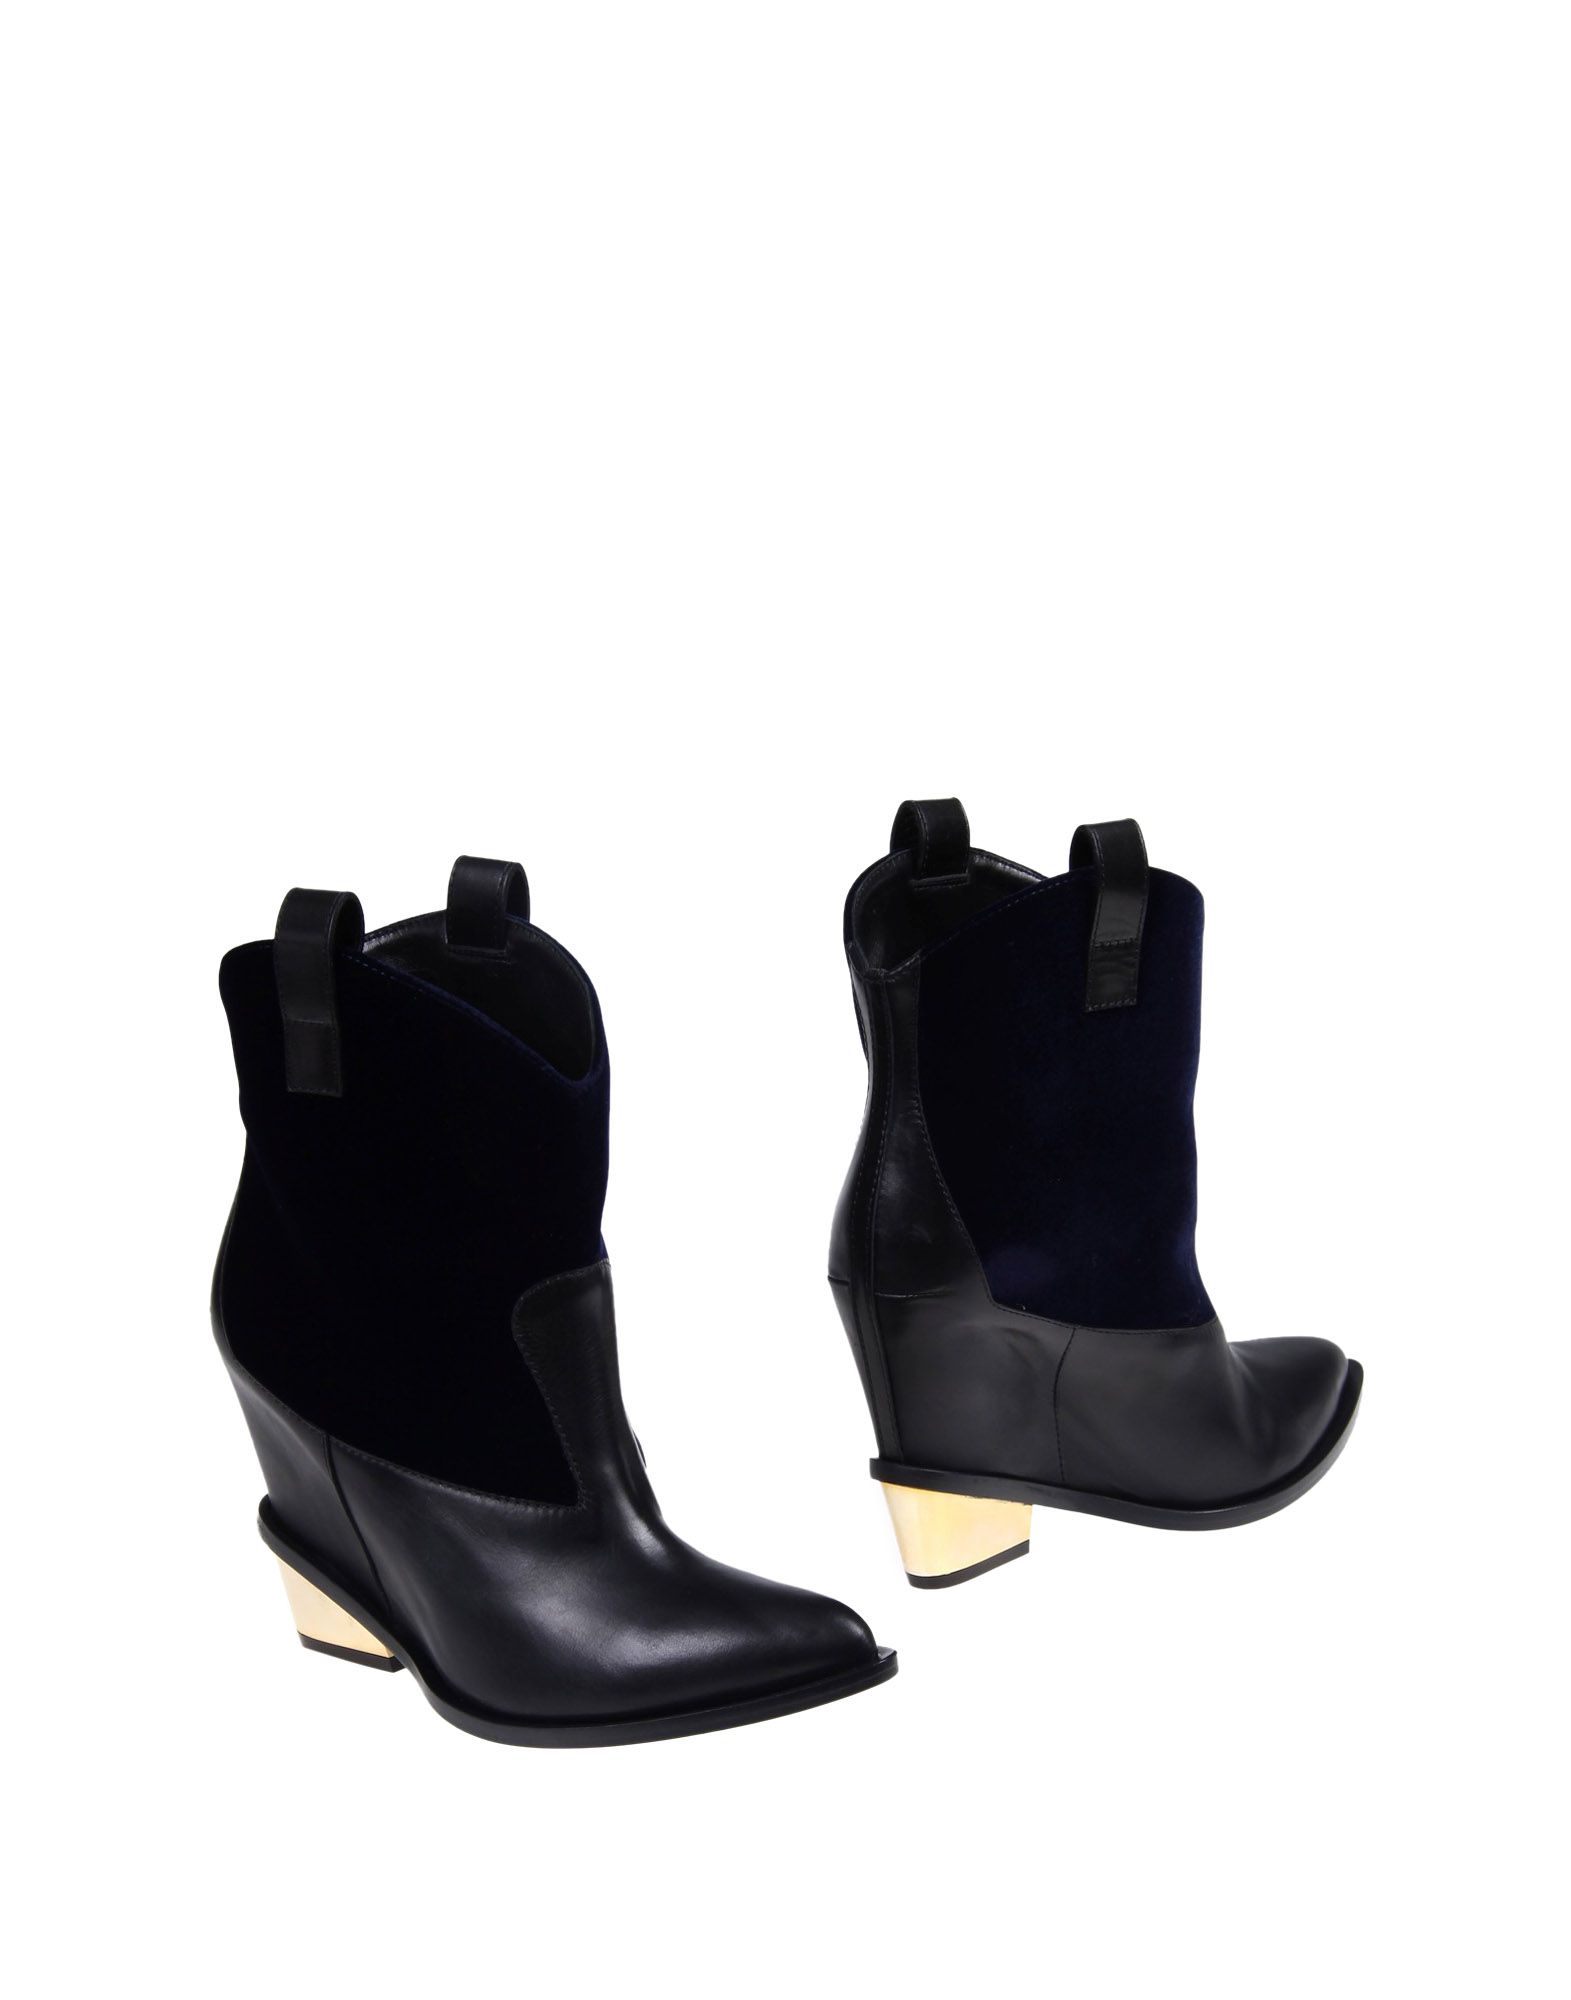 Giuseppe Zanotti Design Ankle Boot   Women Giuseppe Zanotti Design Ankle Boots   44909546DI